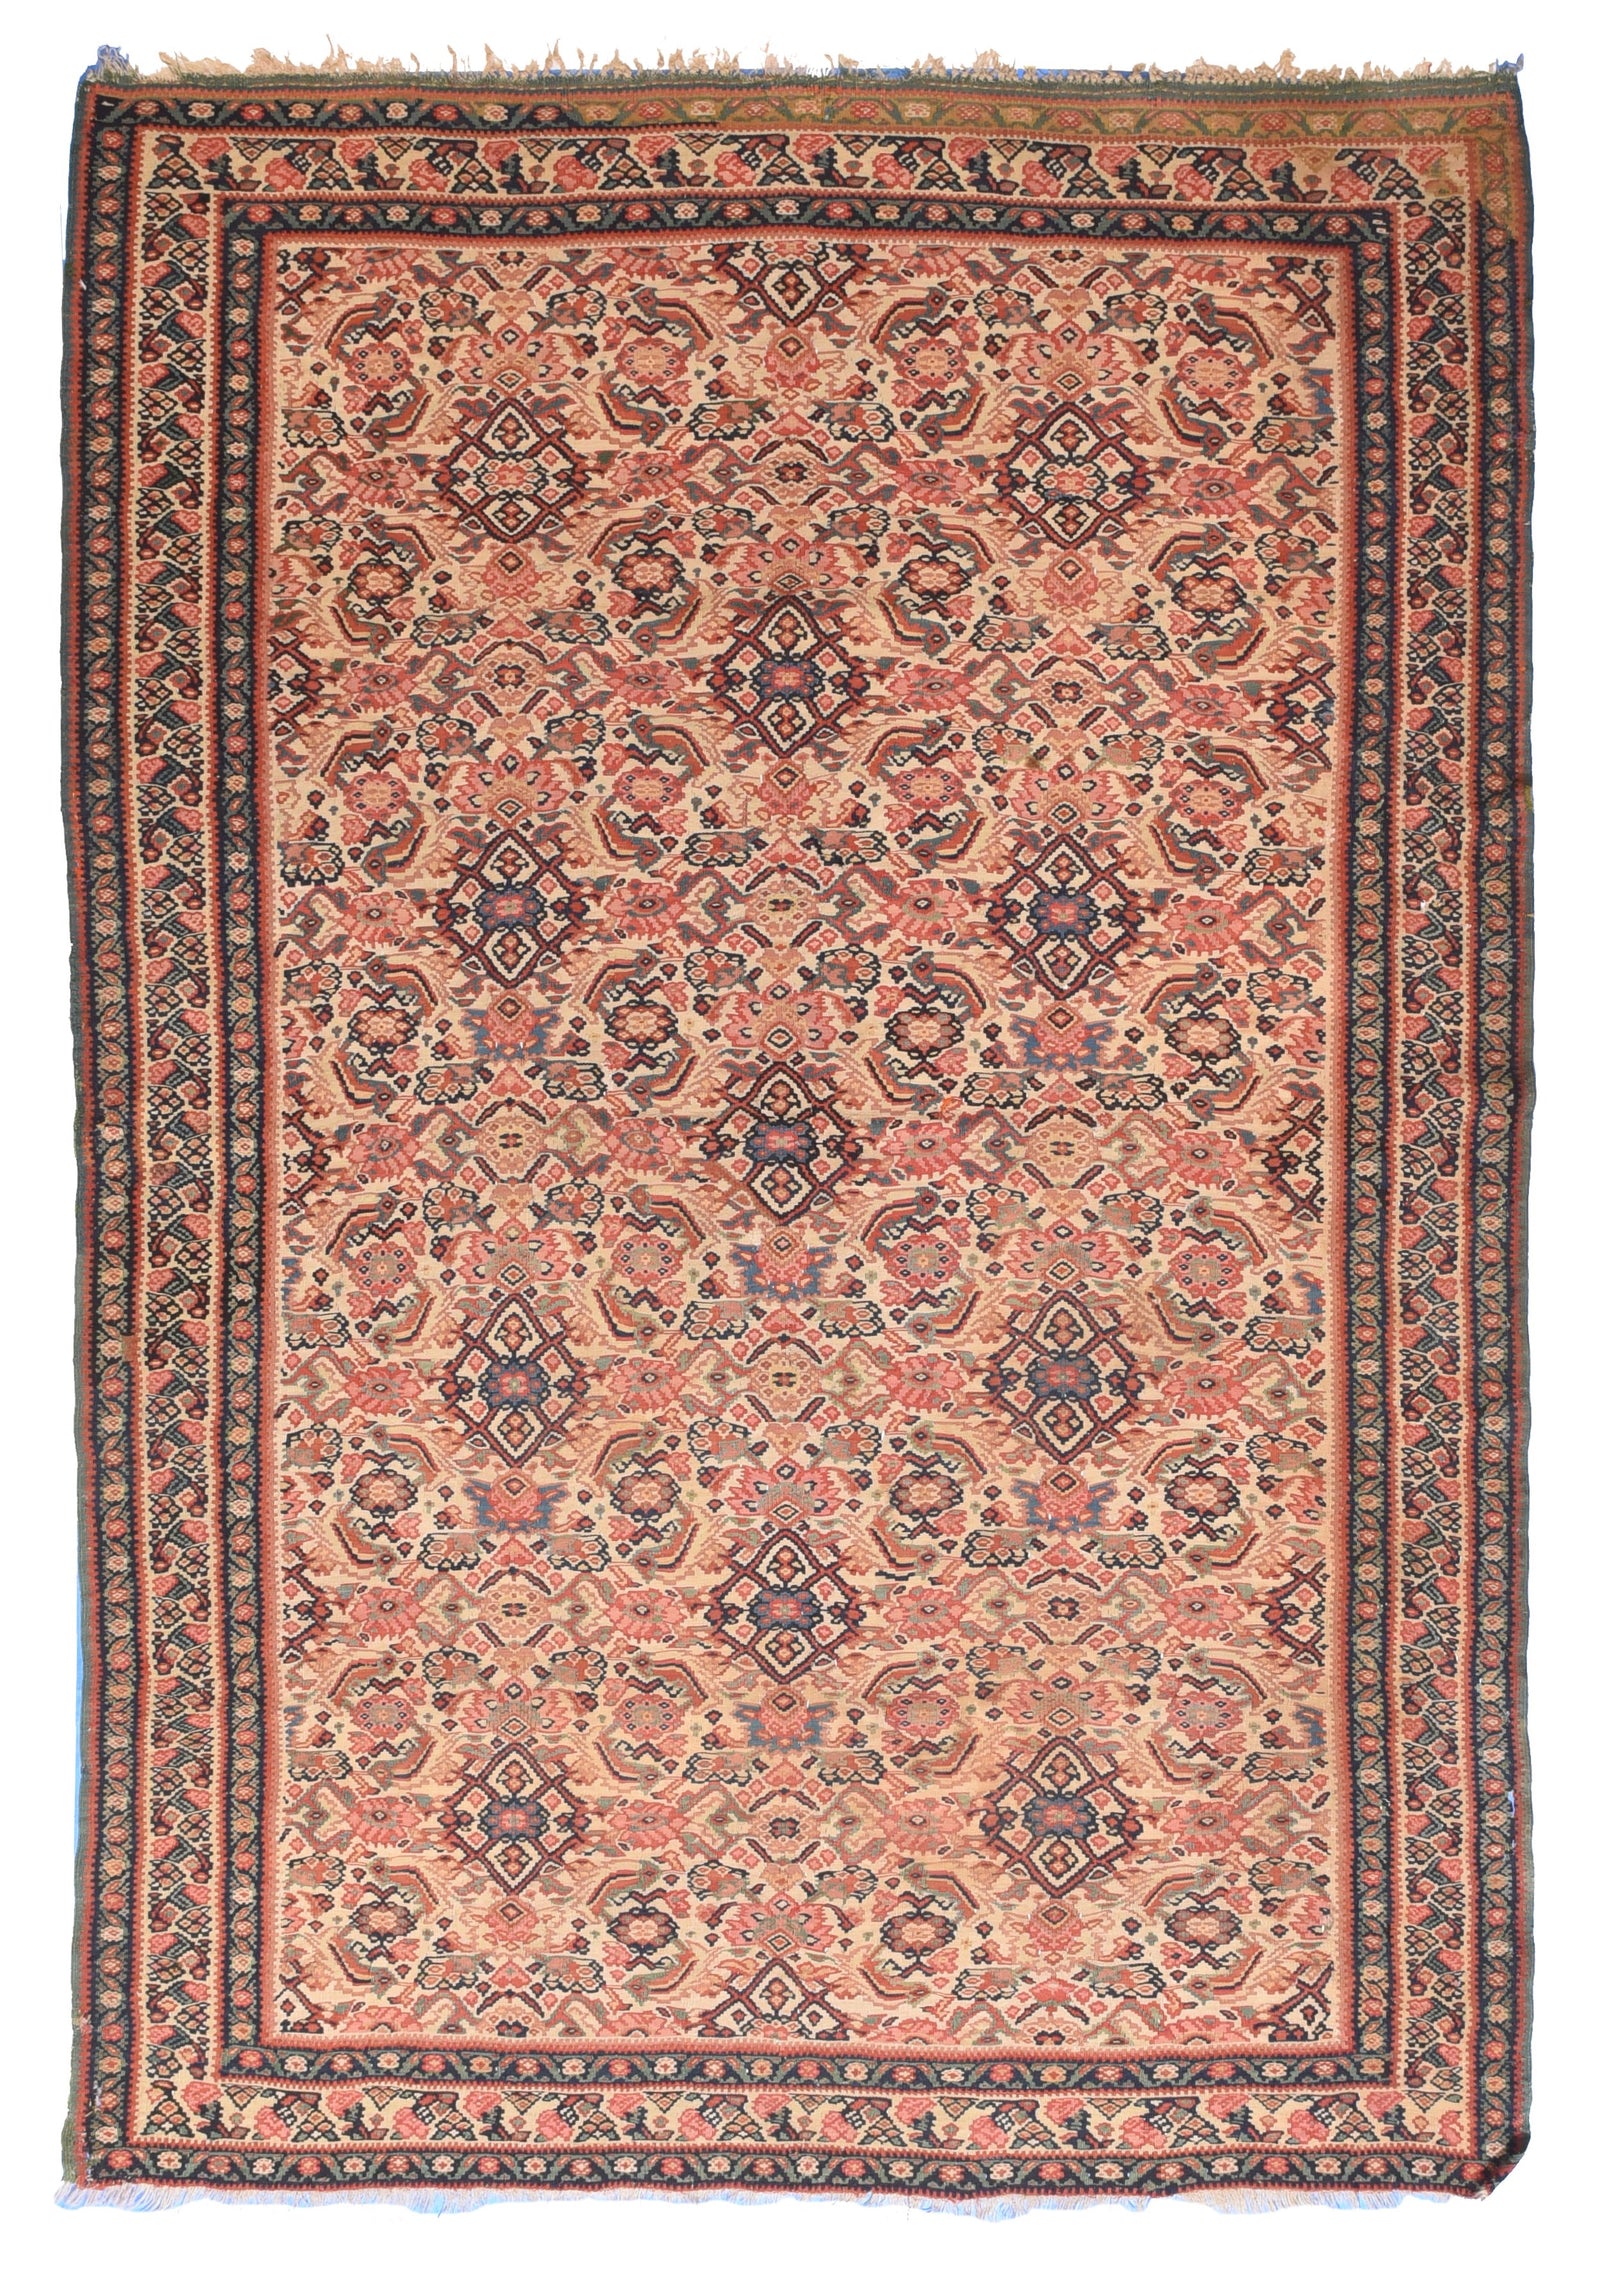 Antique Red Senneh Persian Klim Area Rug